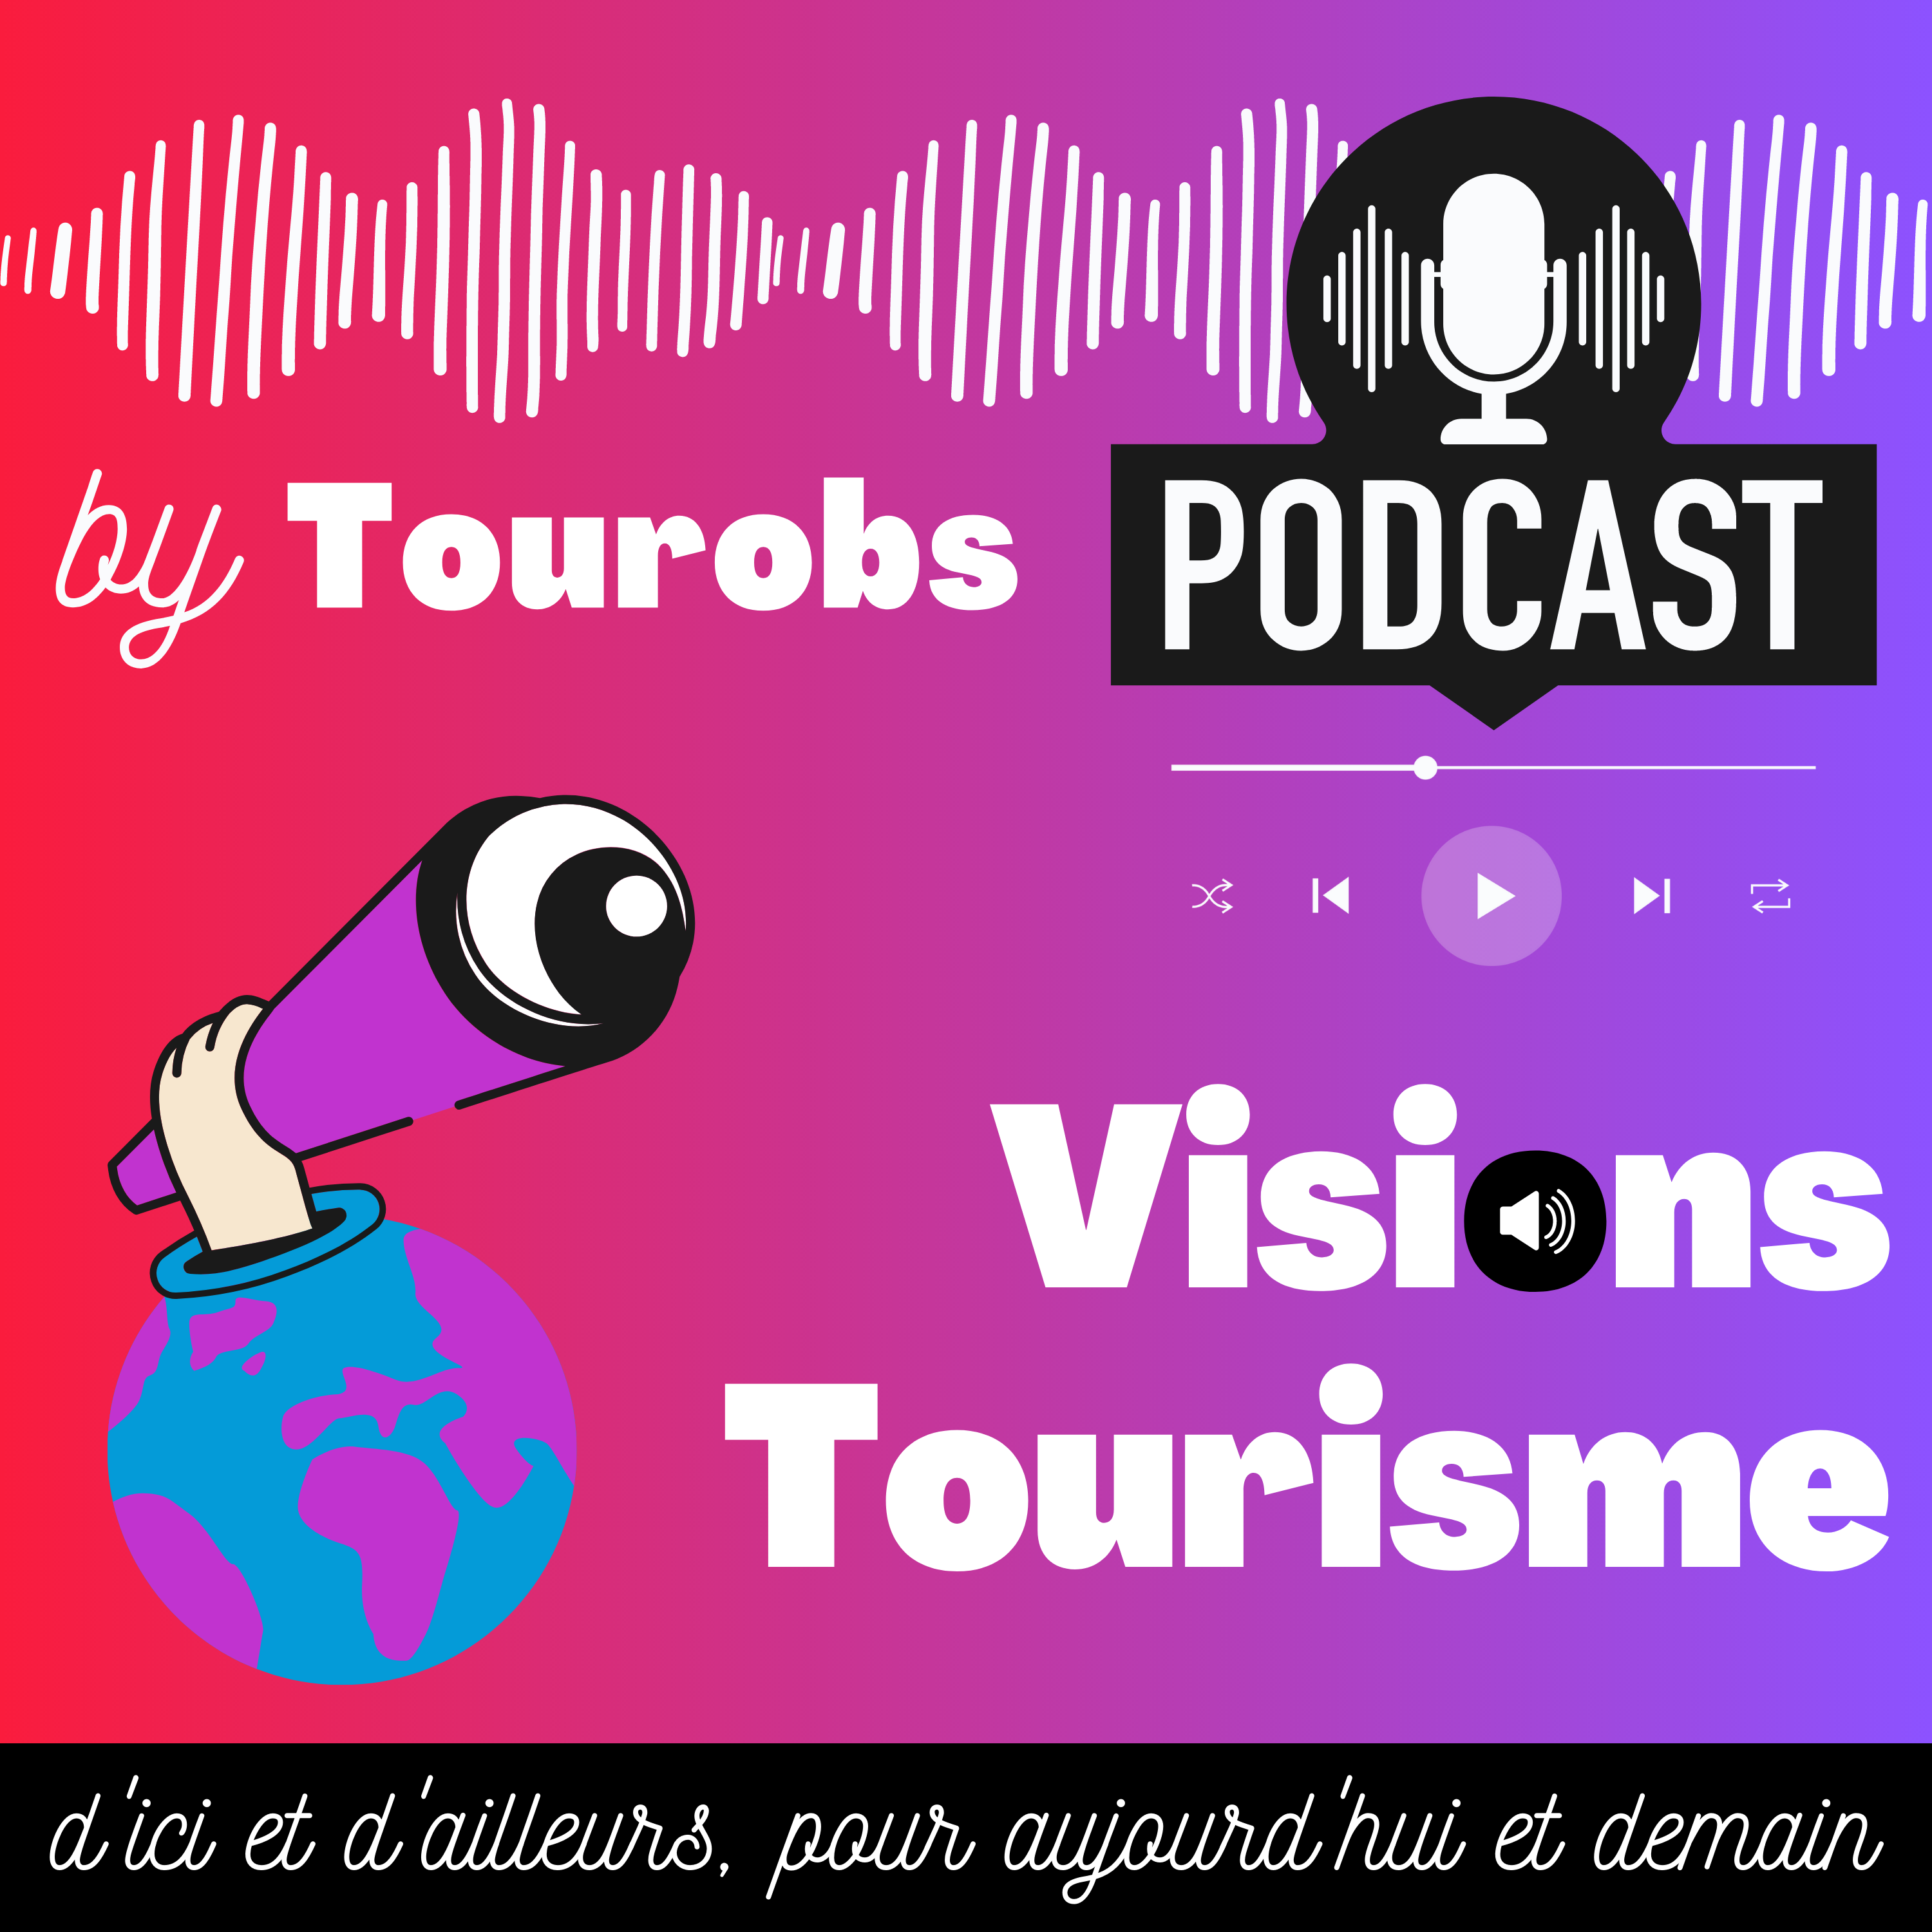 Podcast. Episode #6 – Mini-série Culture et Techno. Arventure plonge les visiteurs dans des jeux d'aventure immersifs en réalité augmentée